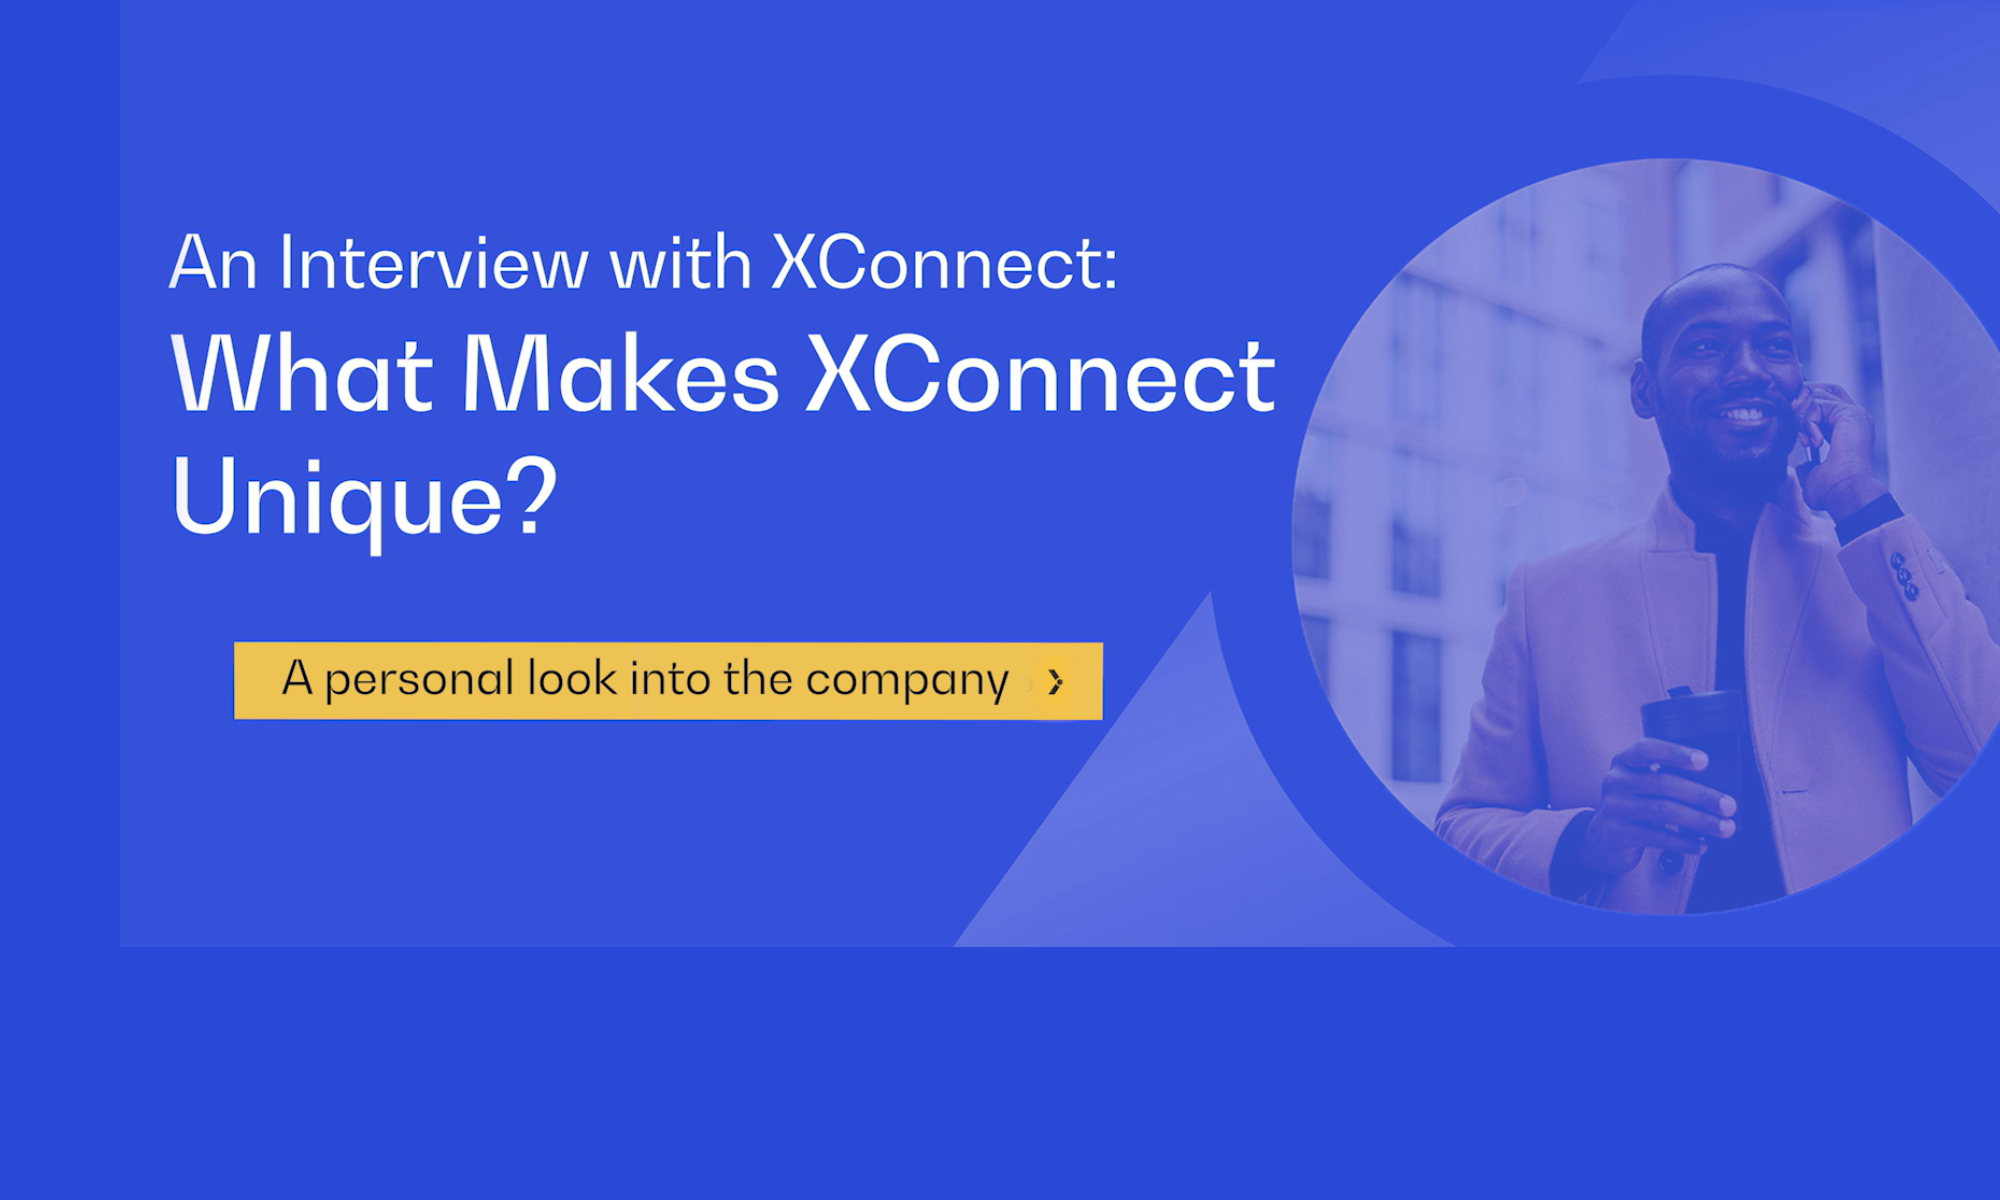 What makes XConnect Unique?